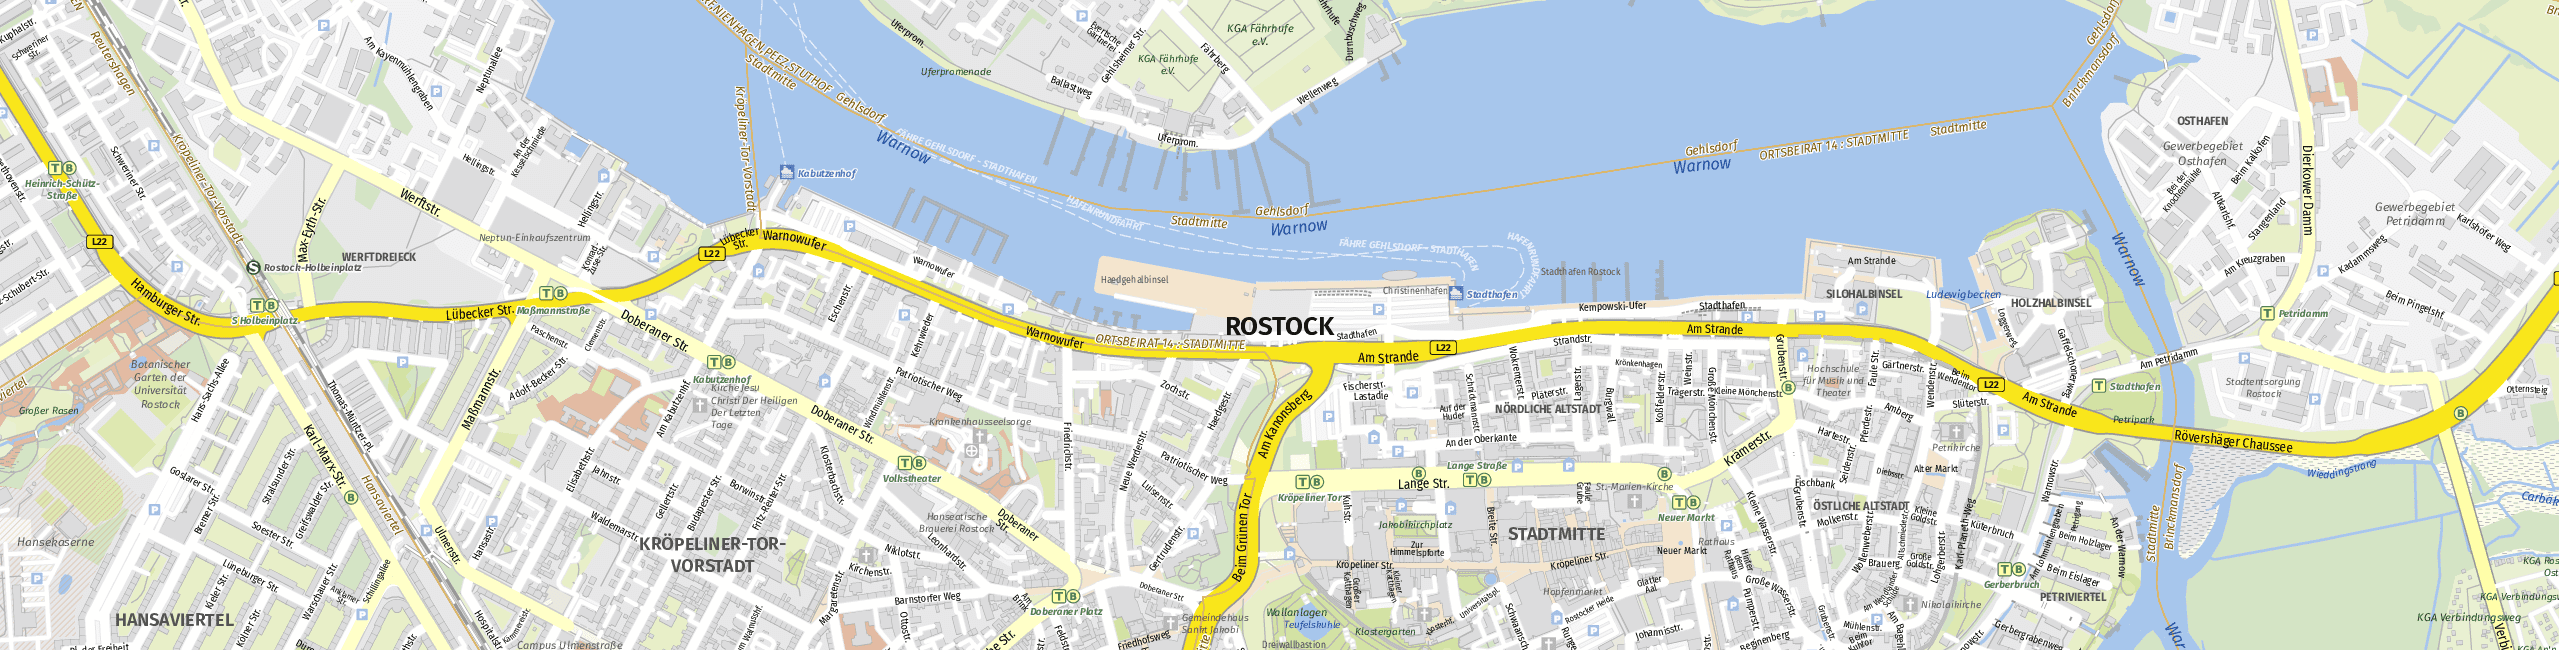 Stadtplan Rostock zum Downloaden.